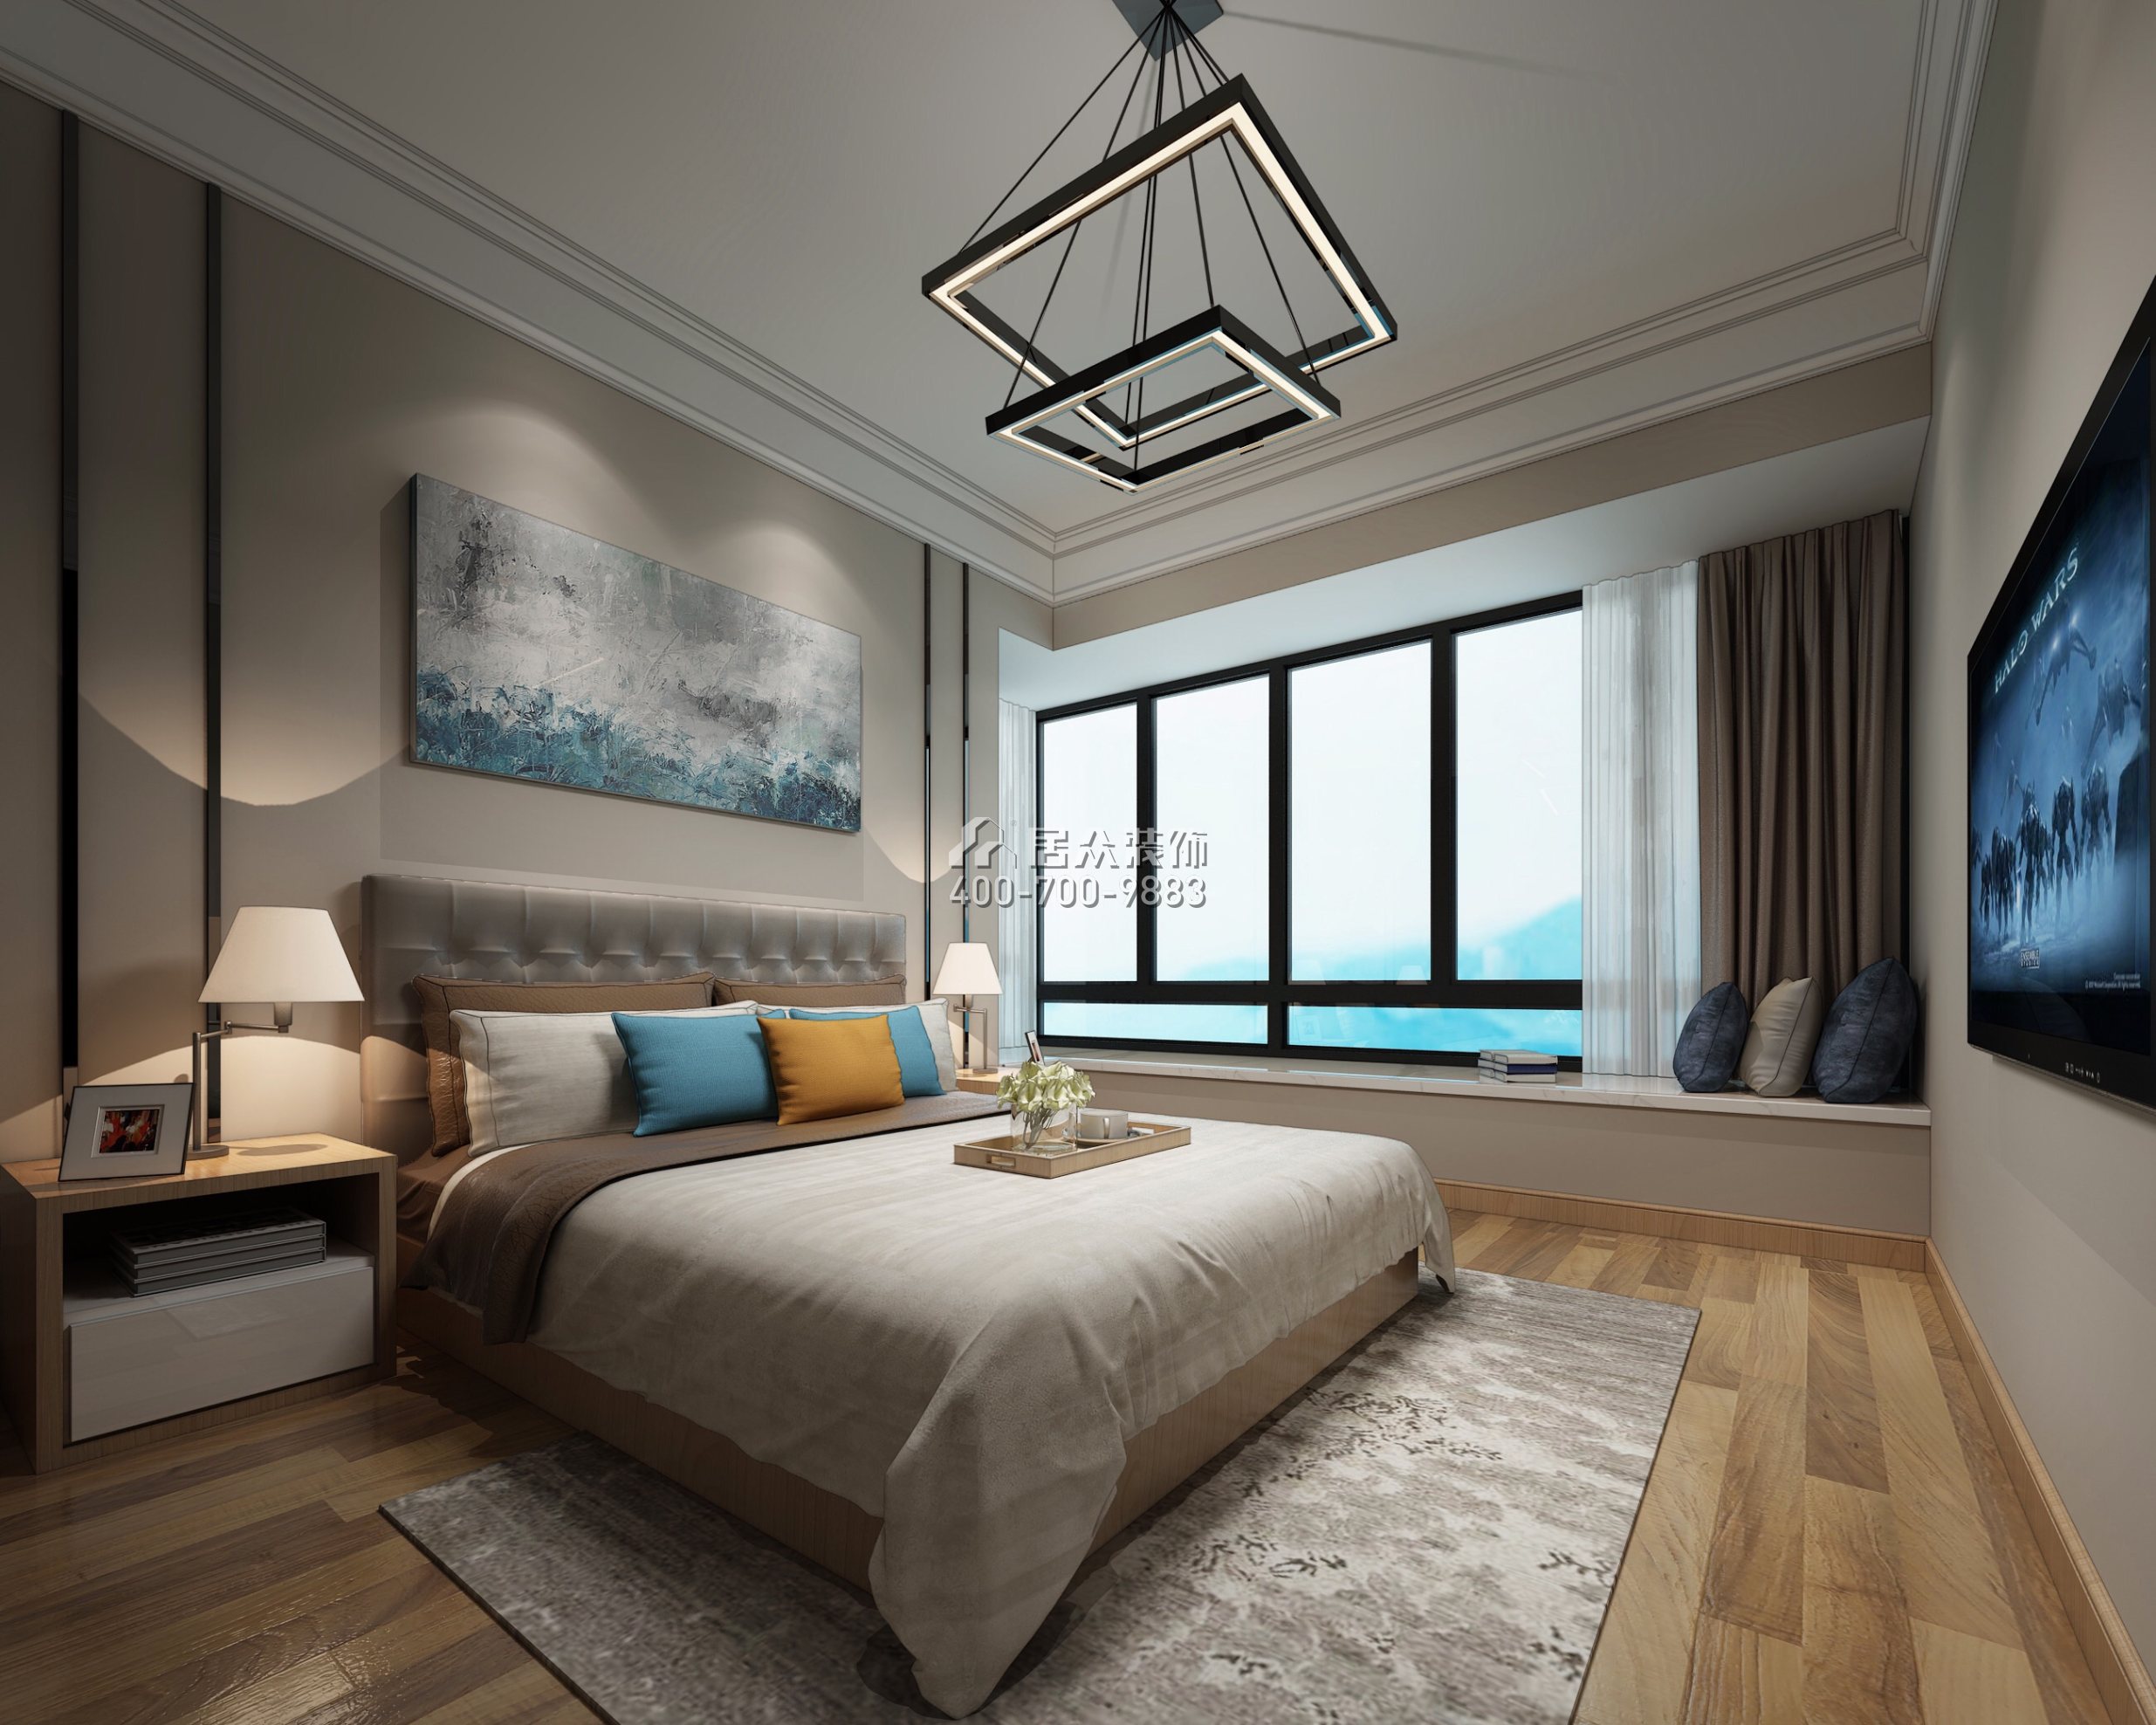 隆生东湖九区106平方米现代简约风格平层户型卧室装修效果图